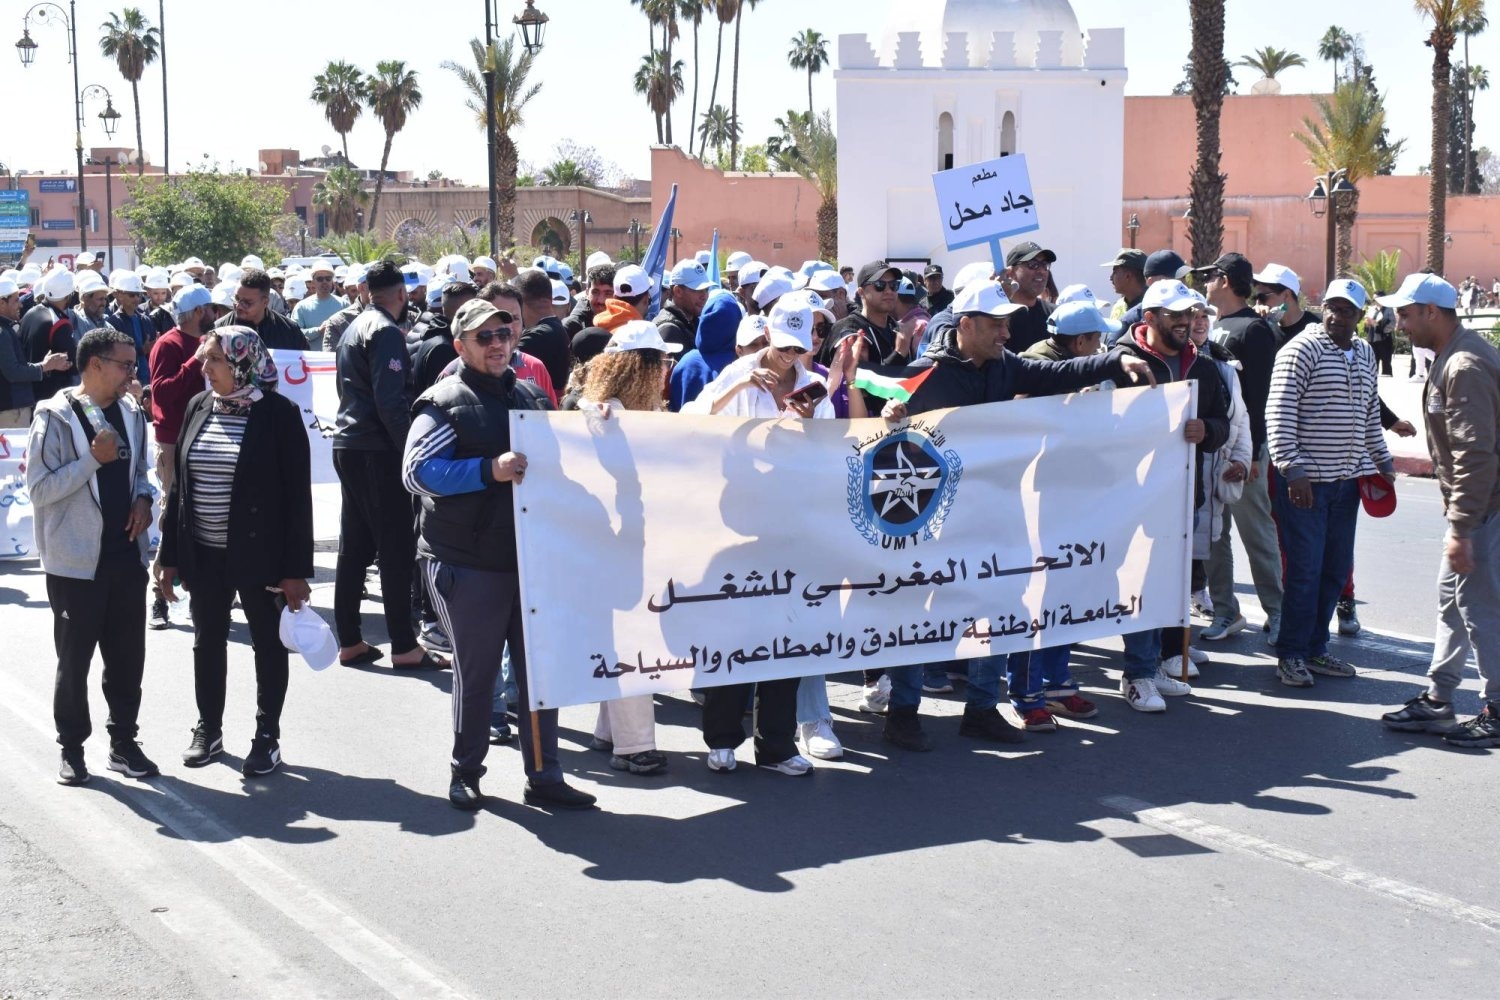 مسيرة حاشدة للنقابات المغربية في مراكش خلال عيد العمال